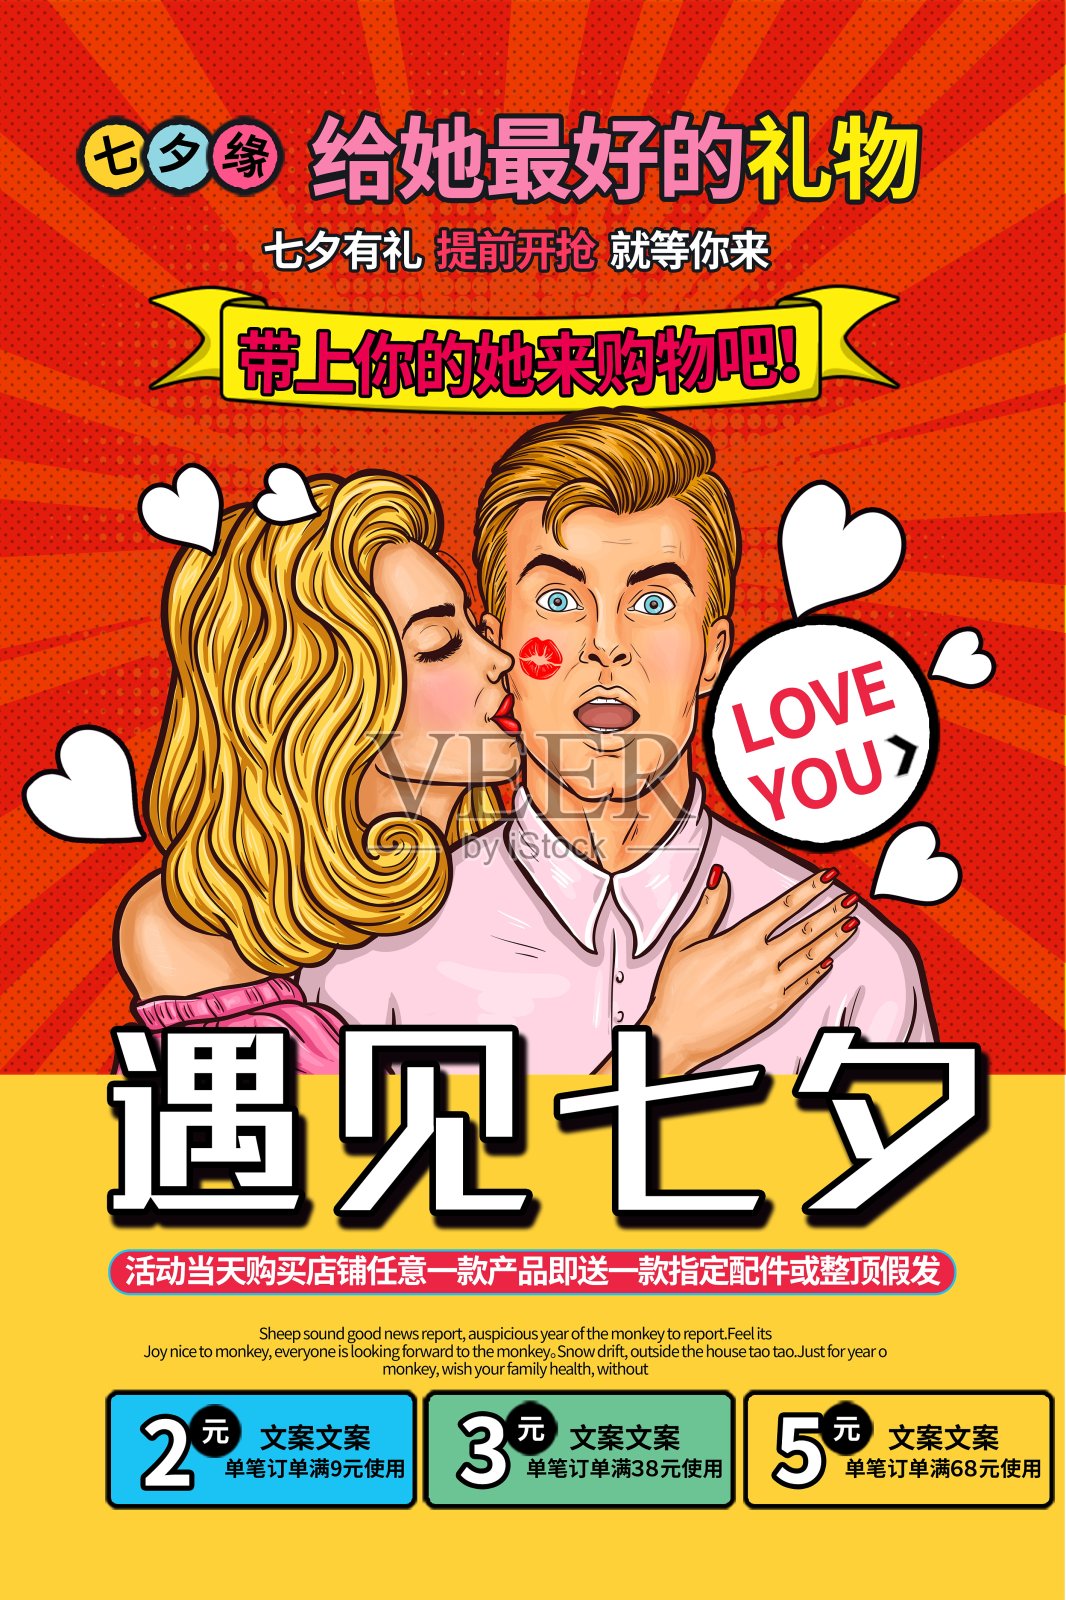 卡通遇见七夕情人节促销海报设计模板素材